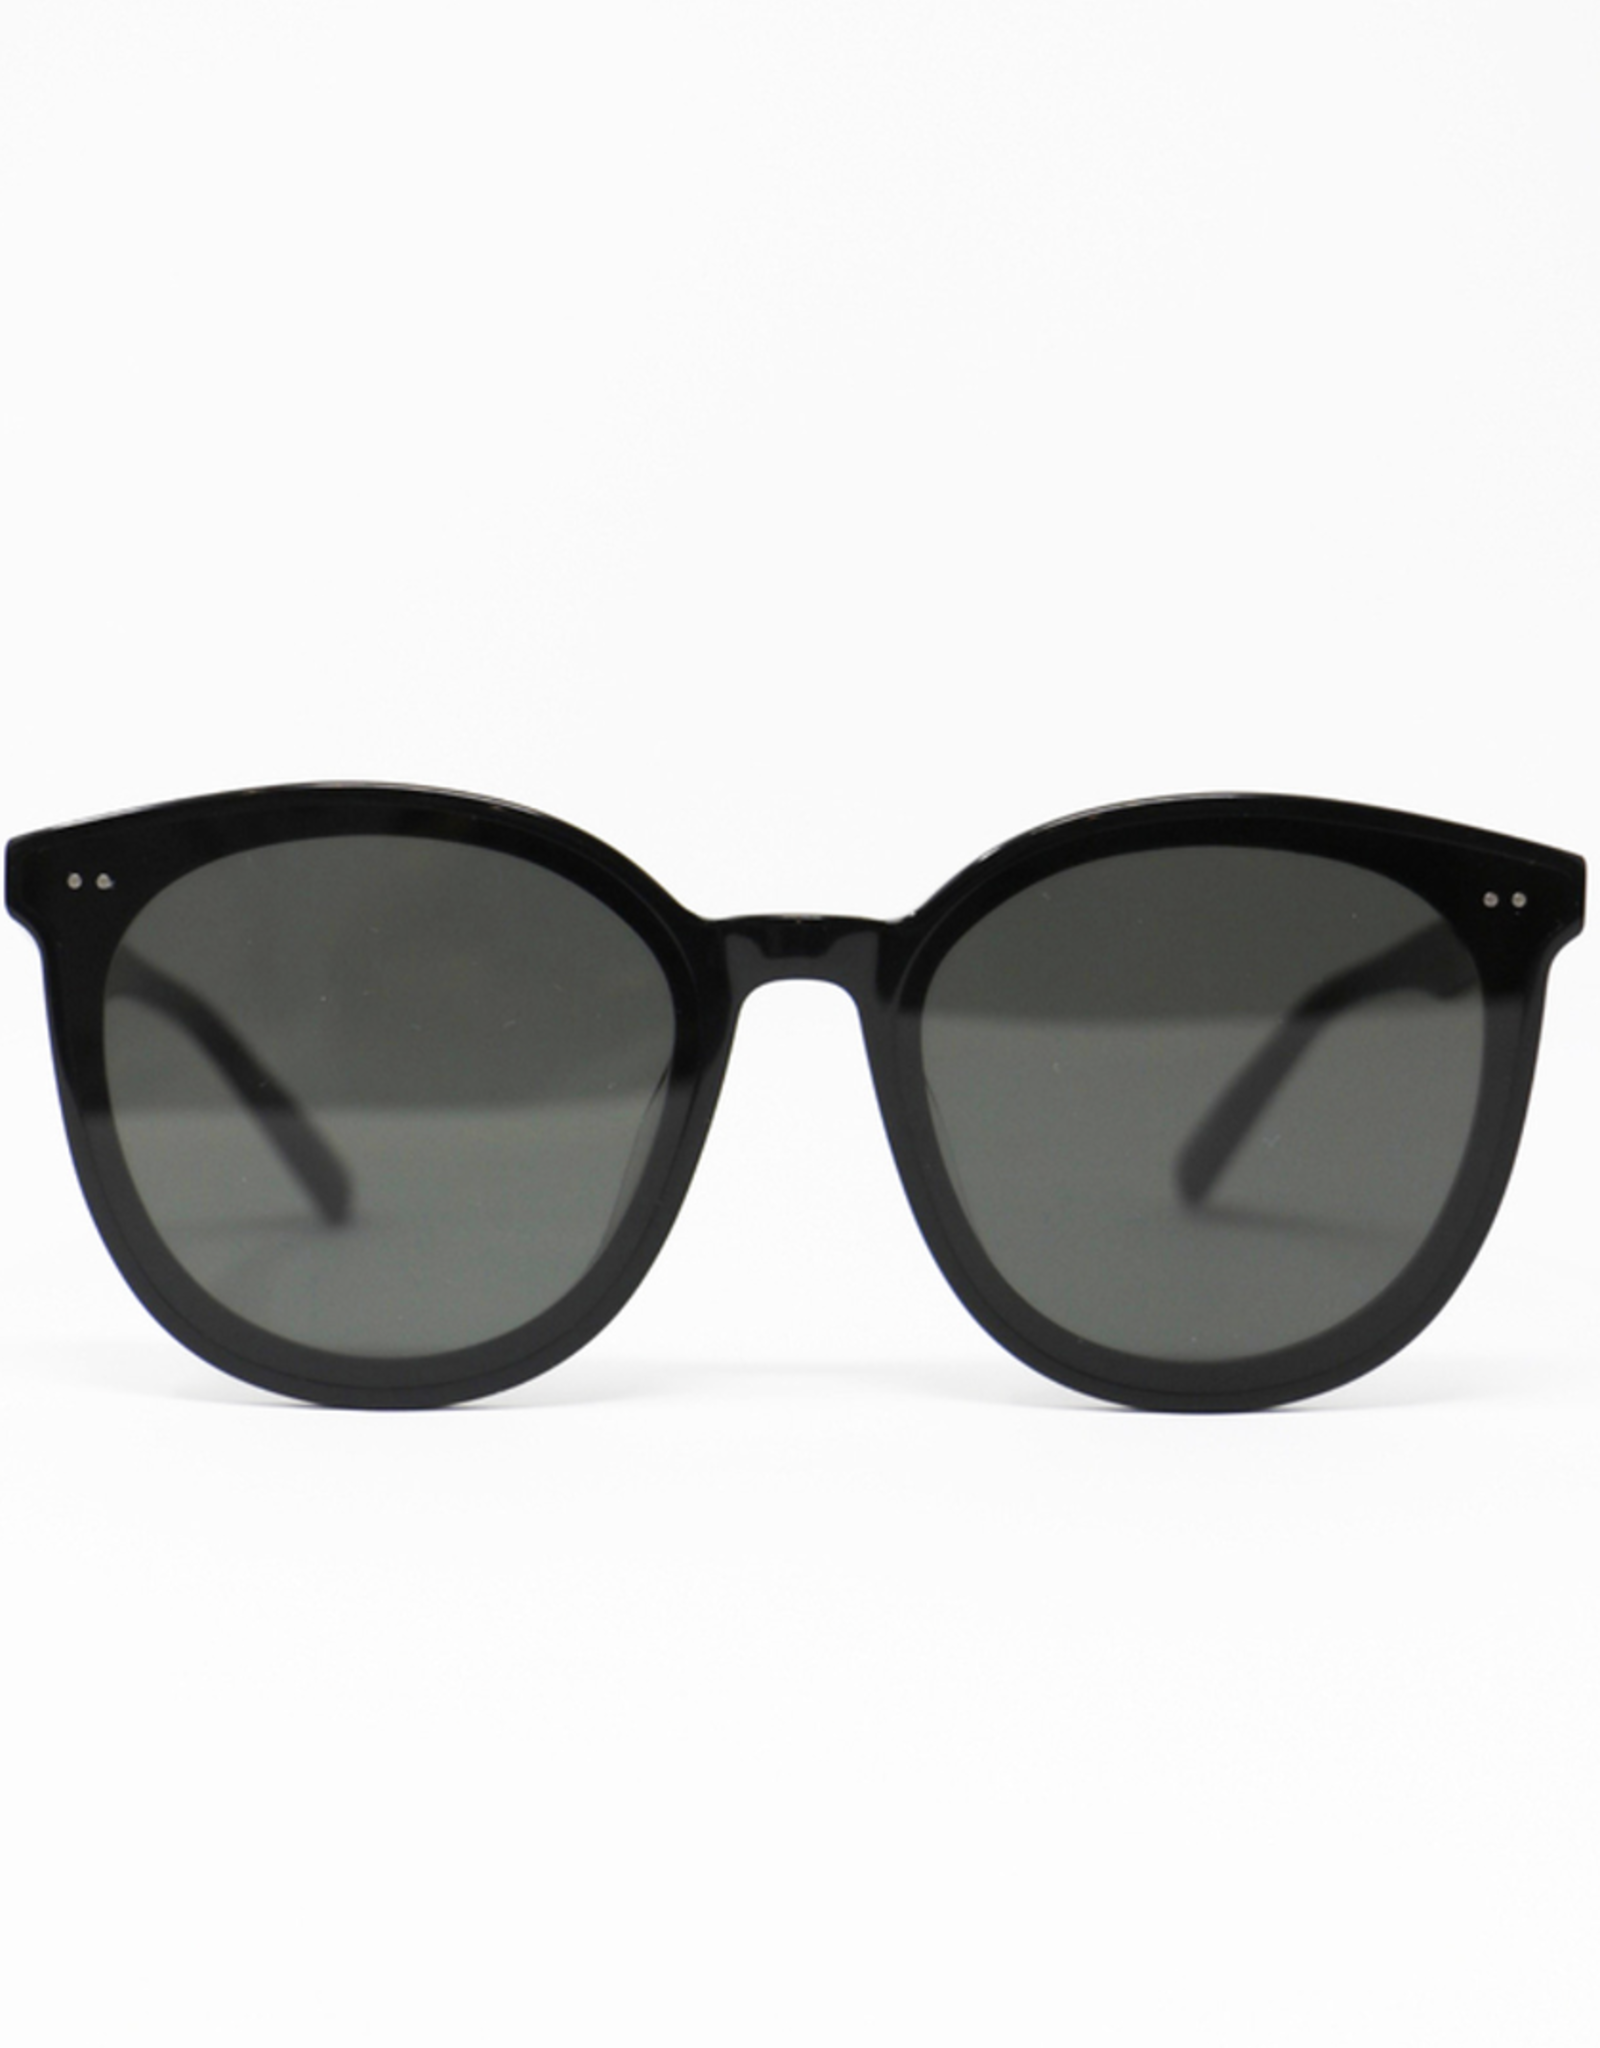 Priv Sonora Persol Sunglasses - Jet Black